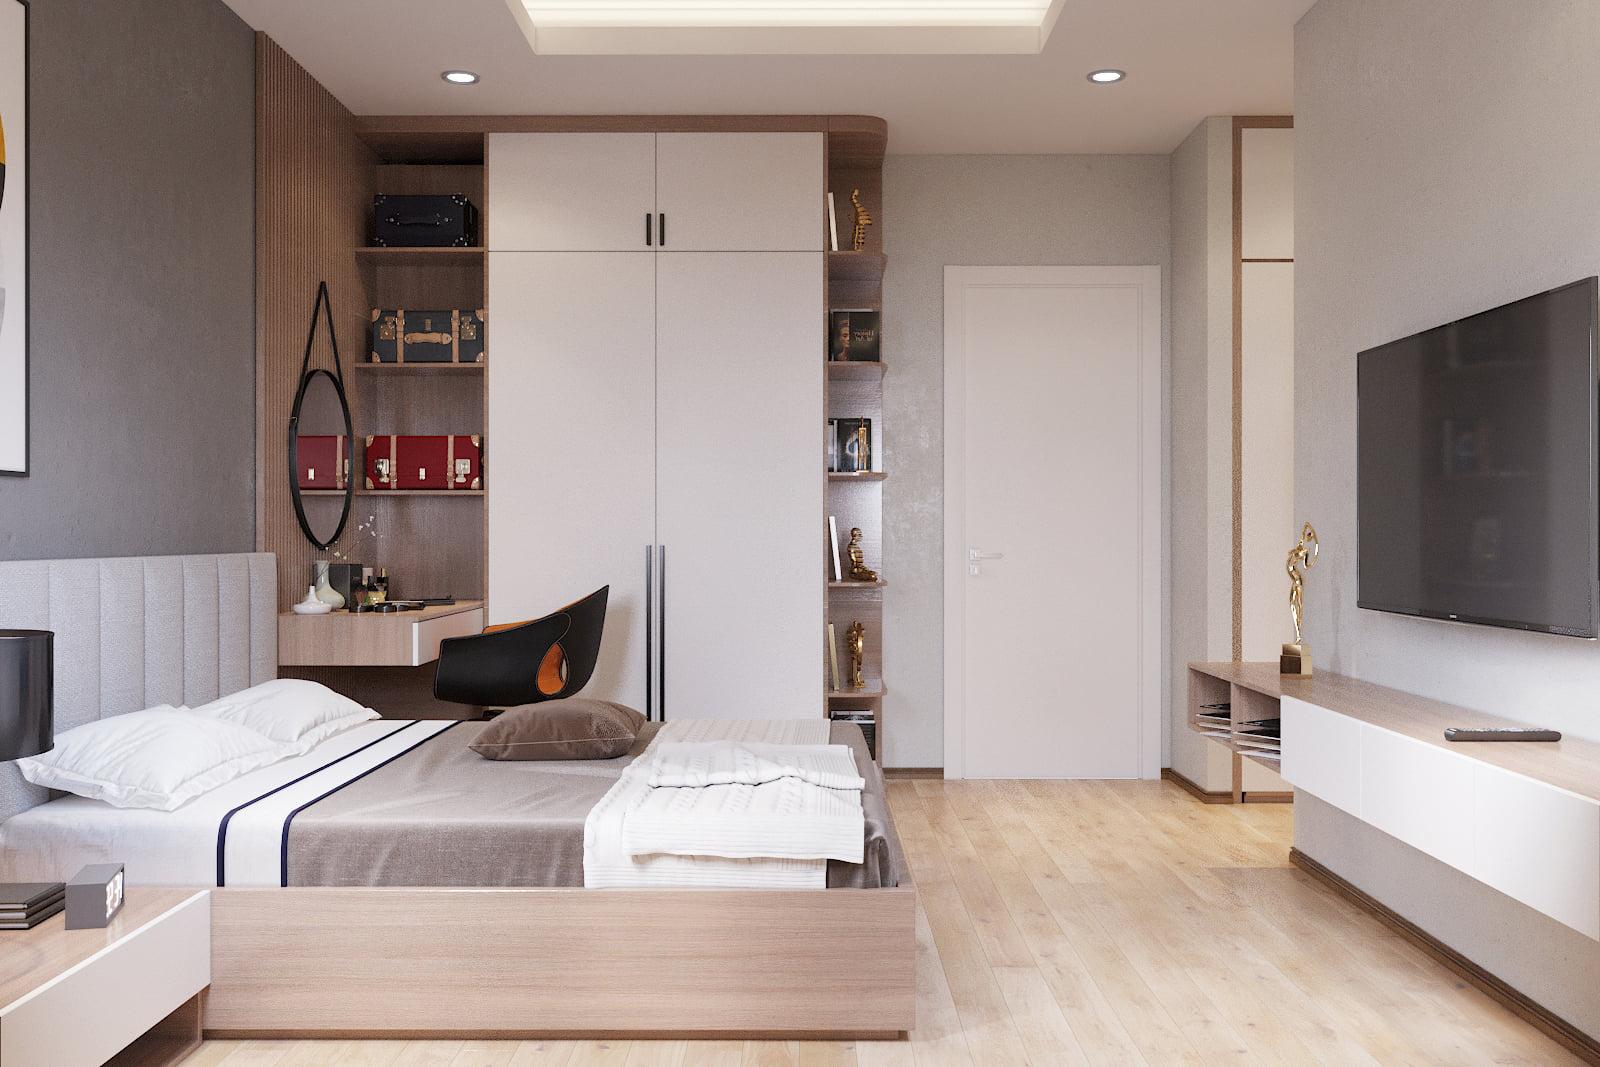  Nguyên tắc thiết kế phòng ngủ chung cư hiện đại, tối ưu diện tích và công năng sử dụng 2